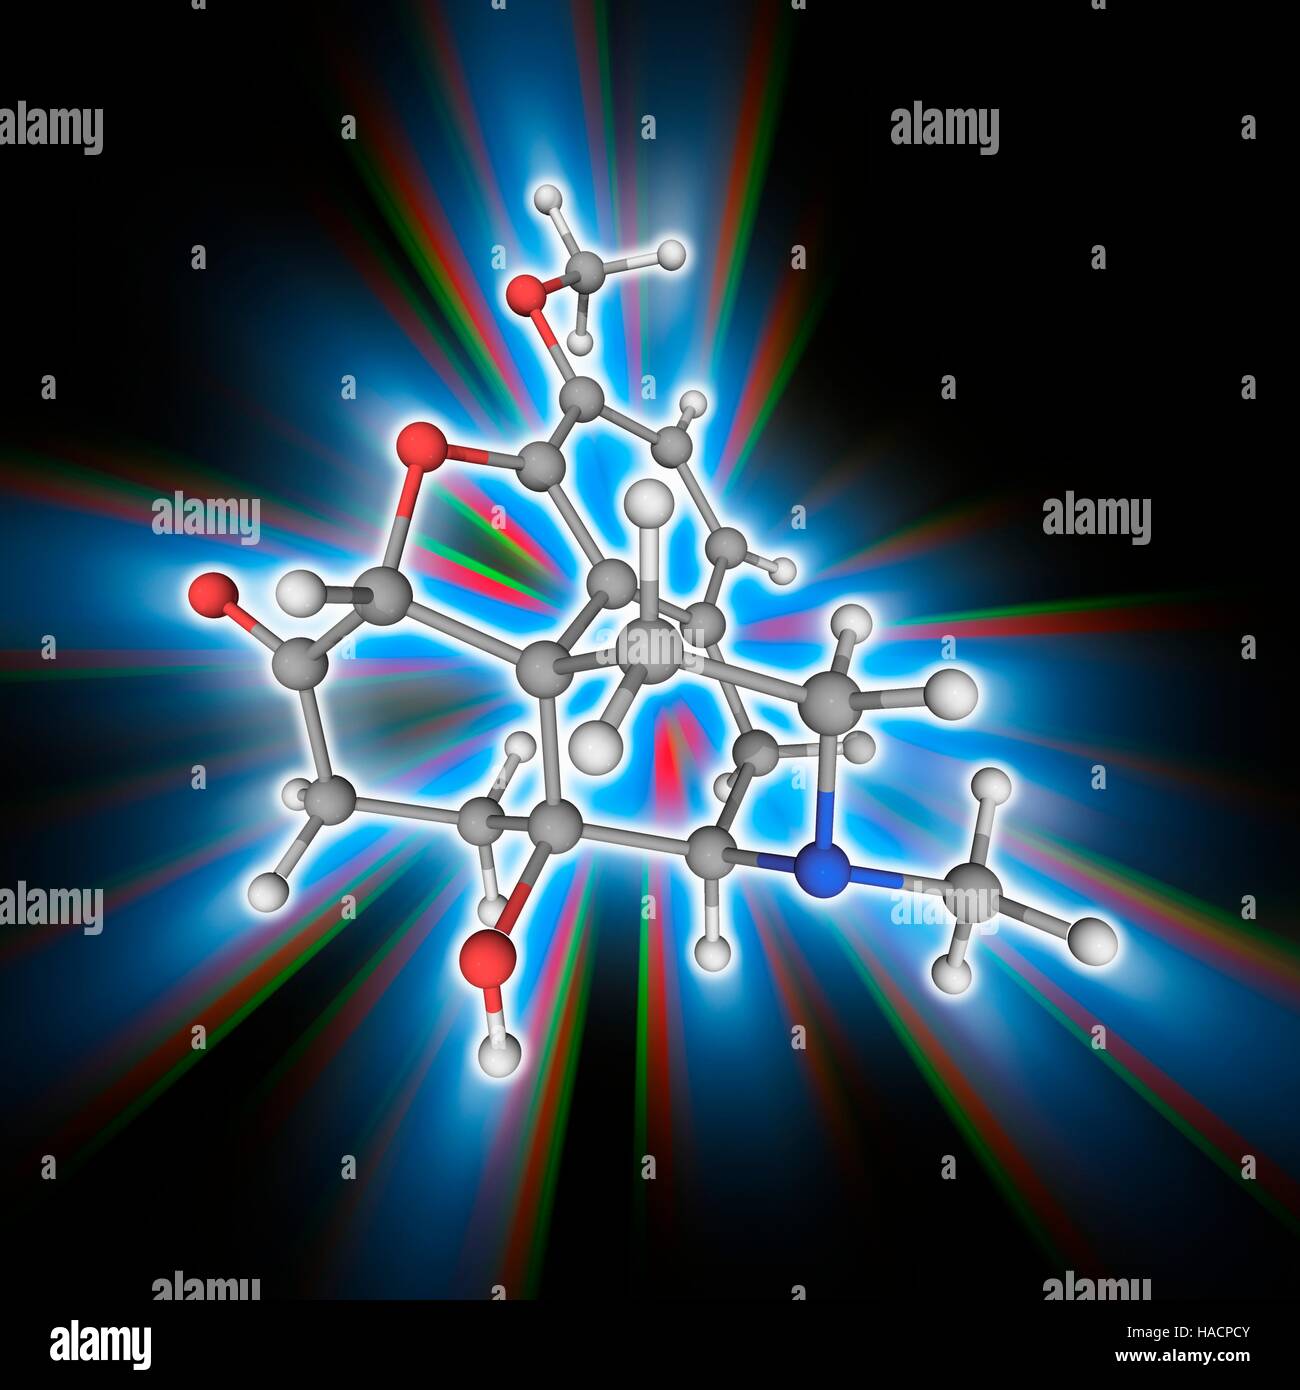 Oxycodon. Molekülmodell von opioid-Analgetikum Oxycodon (C18. H21. N.O4), zur Behandlung von mittelschwerer bis schwerer Schmerz. Atome als Kugeln dargestellt werden und sind farblich gekennzeichnet: Kohlenstoff (grau), Wasserstoff (weiß), Stickstoff (blau) und Sauerstoff (rot). Abbildung. Stockfoto